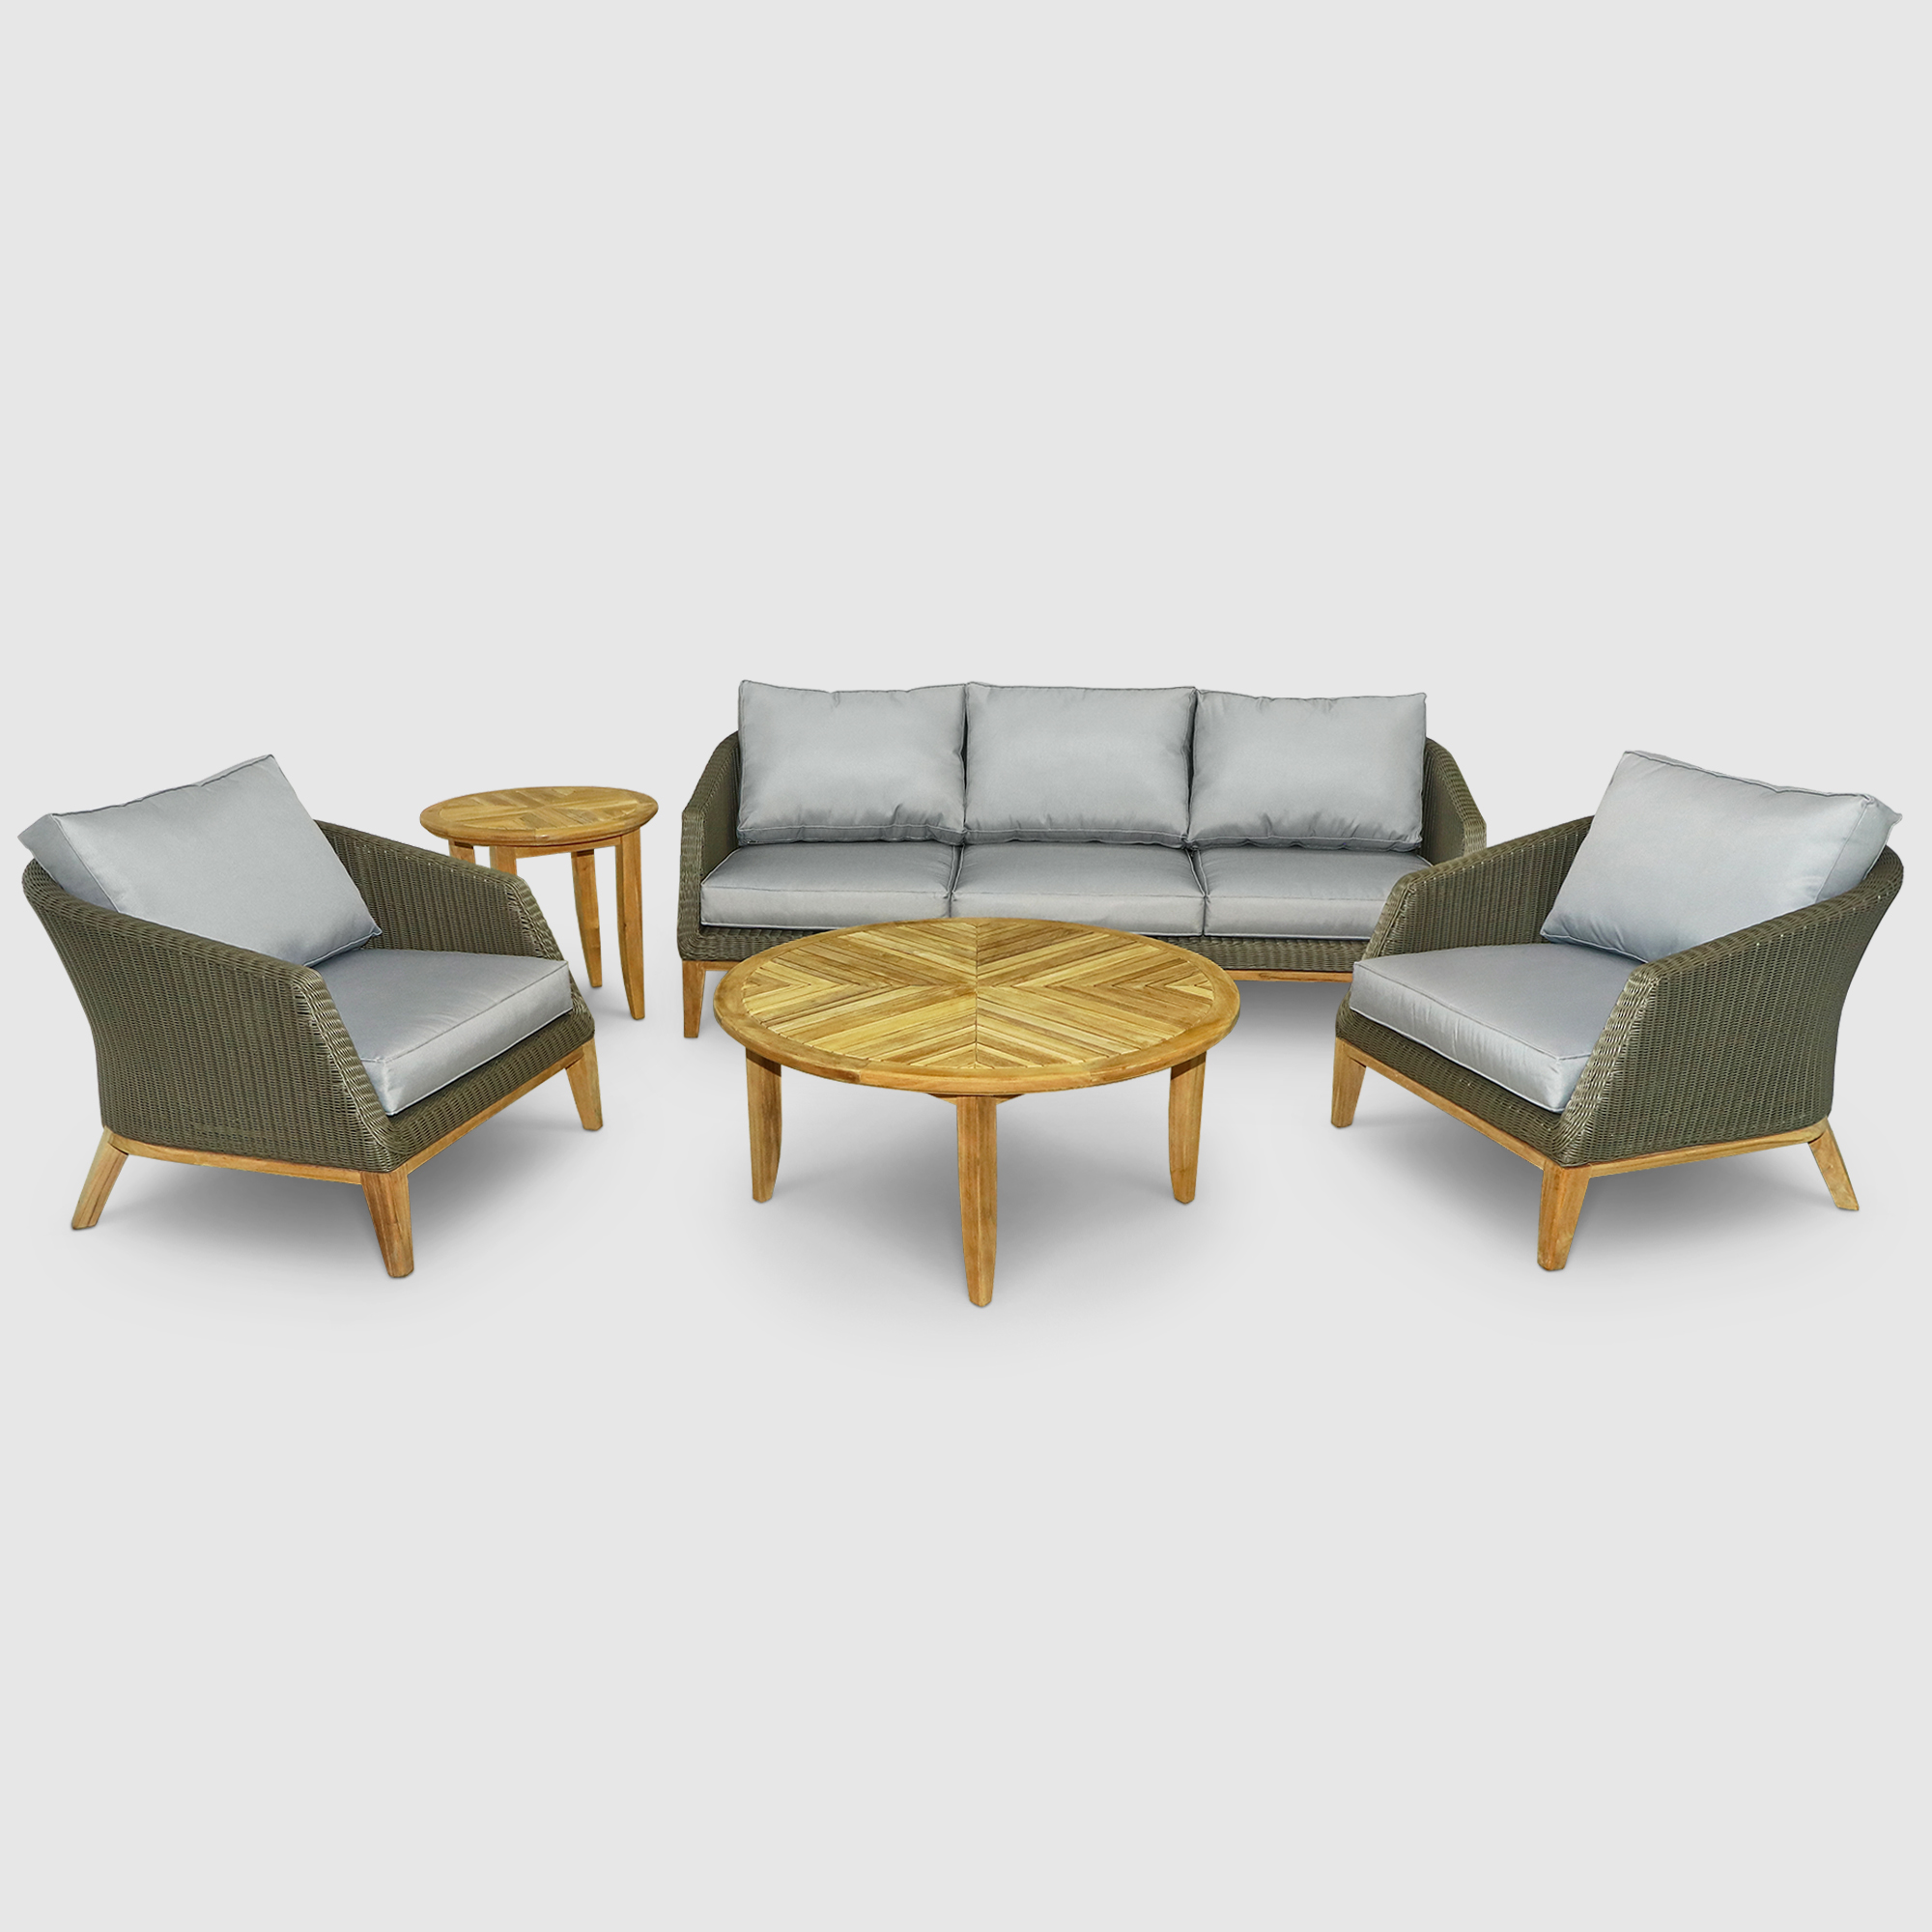 Комплект мебели Jepara havanah 5 предметов хаки, цвет натуральный, размер 202х88х73 см - фото 1